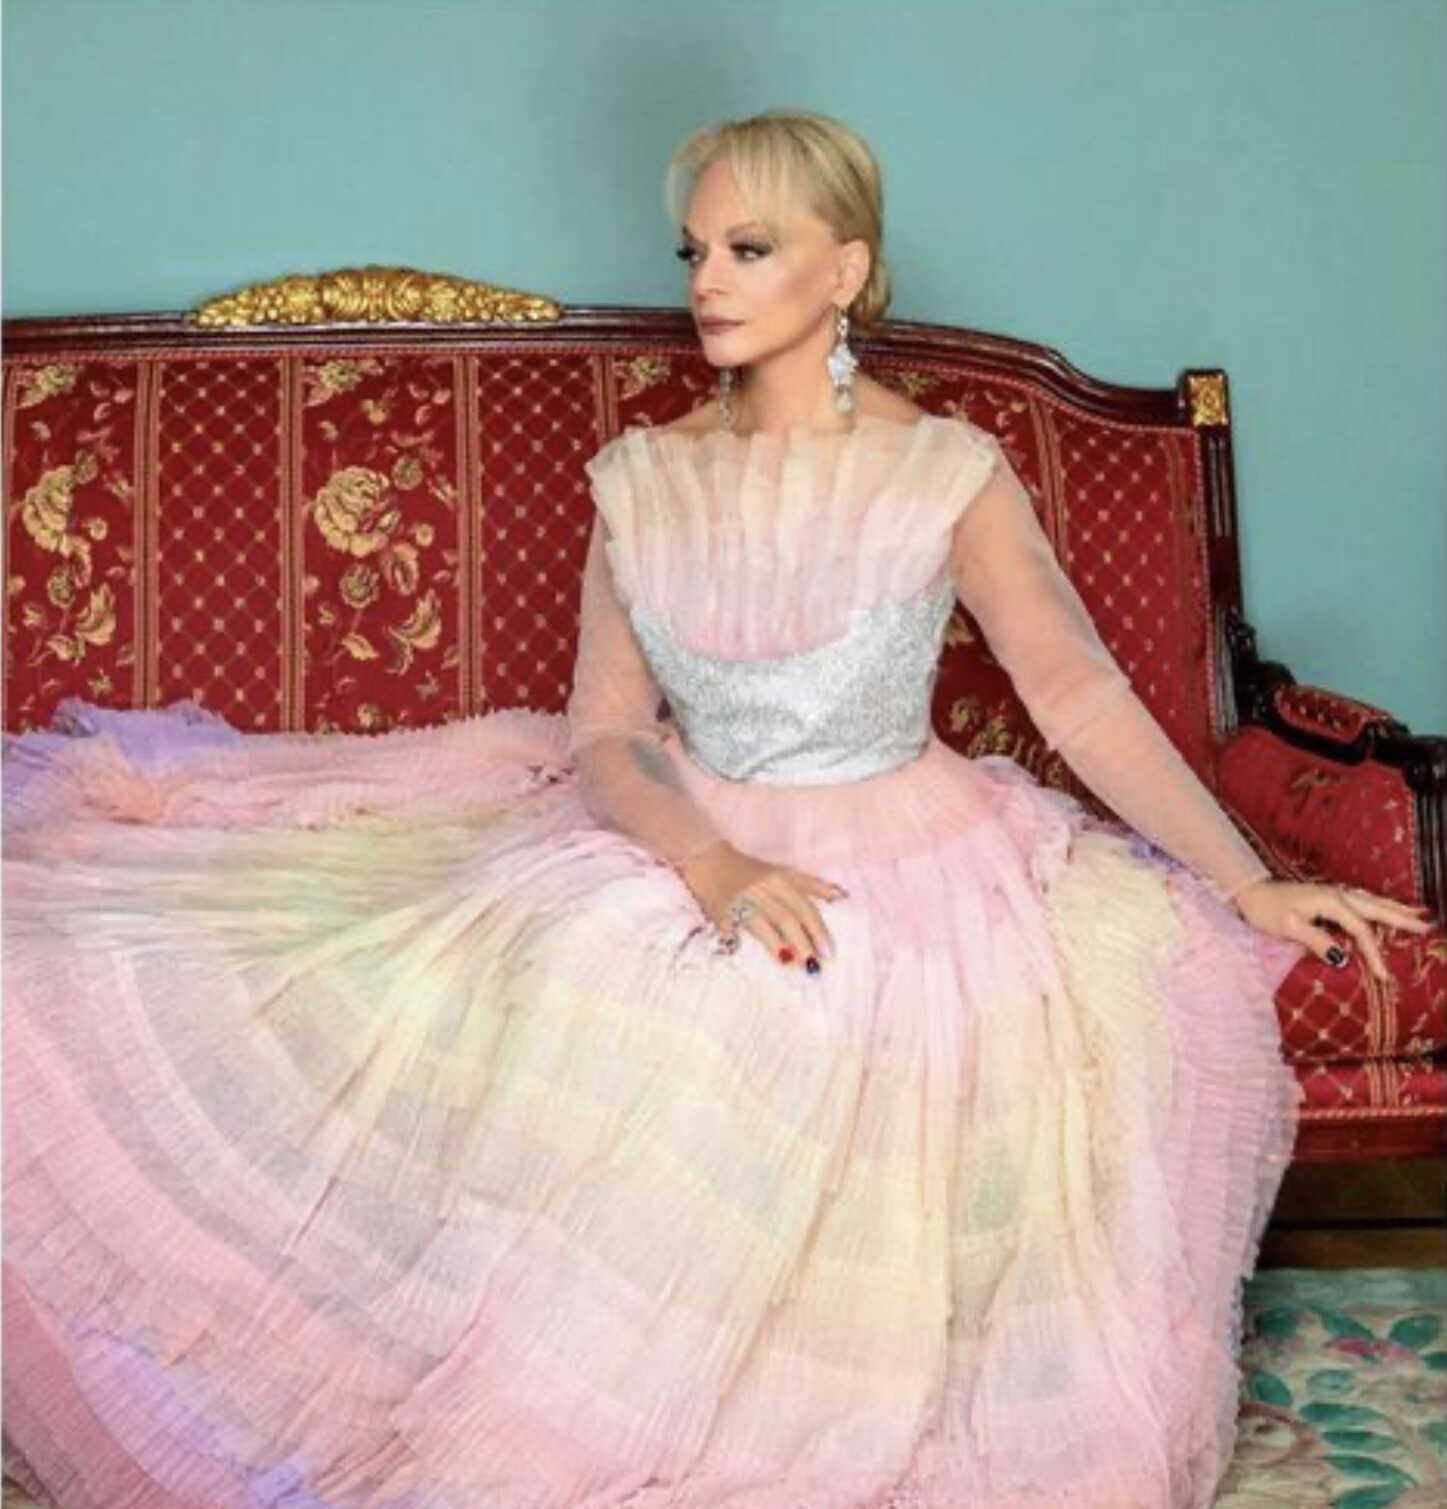 Лариса Долина нарядилась в розовое пышное платье принцессы, скомпрометировав свою дочь